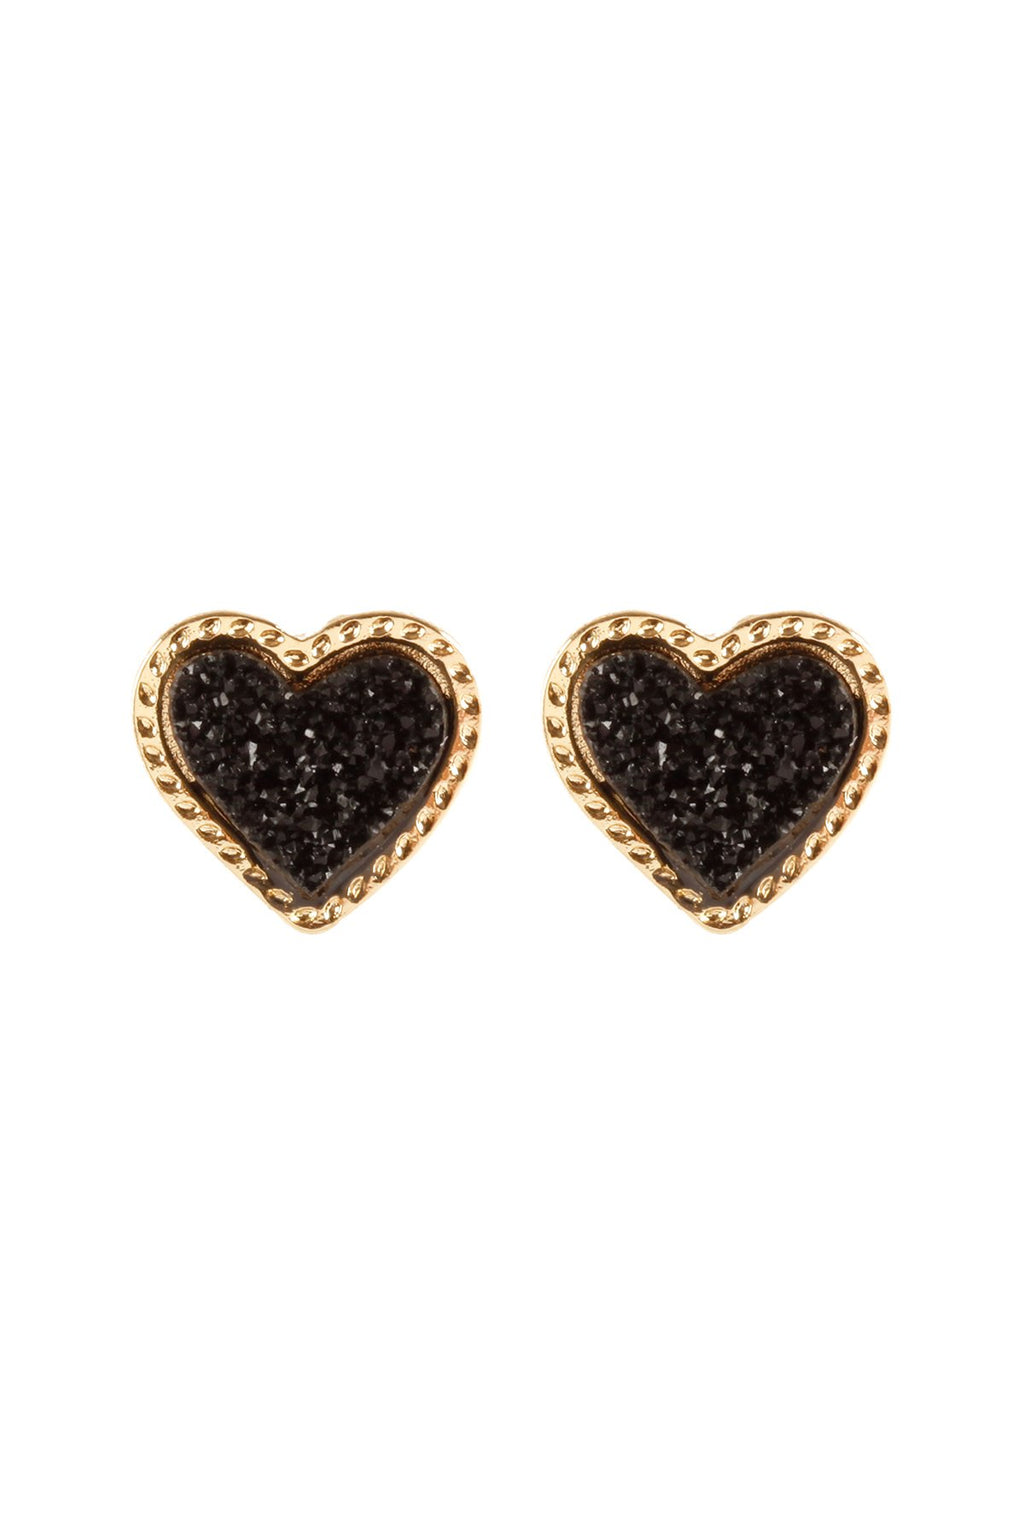 Fe5479 - Metal Druzy Heart Valentine Post Earrings